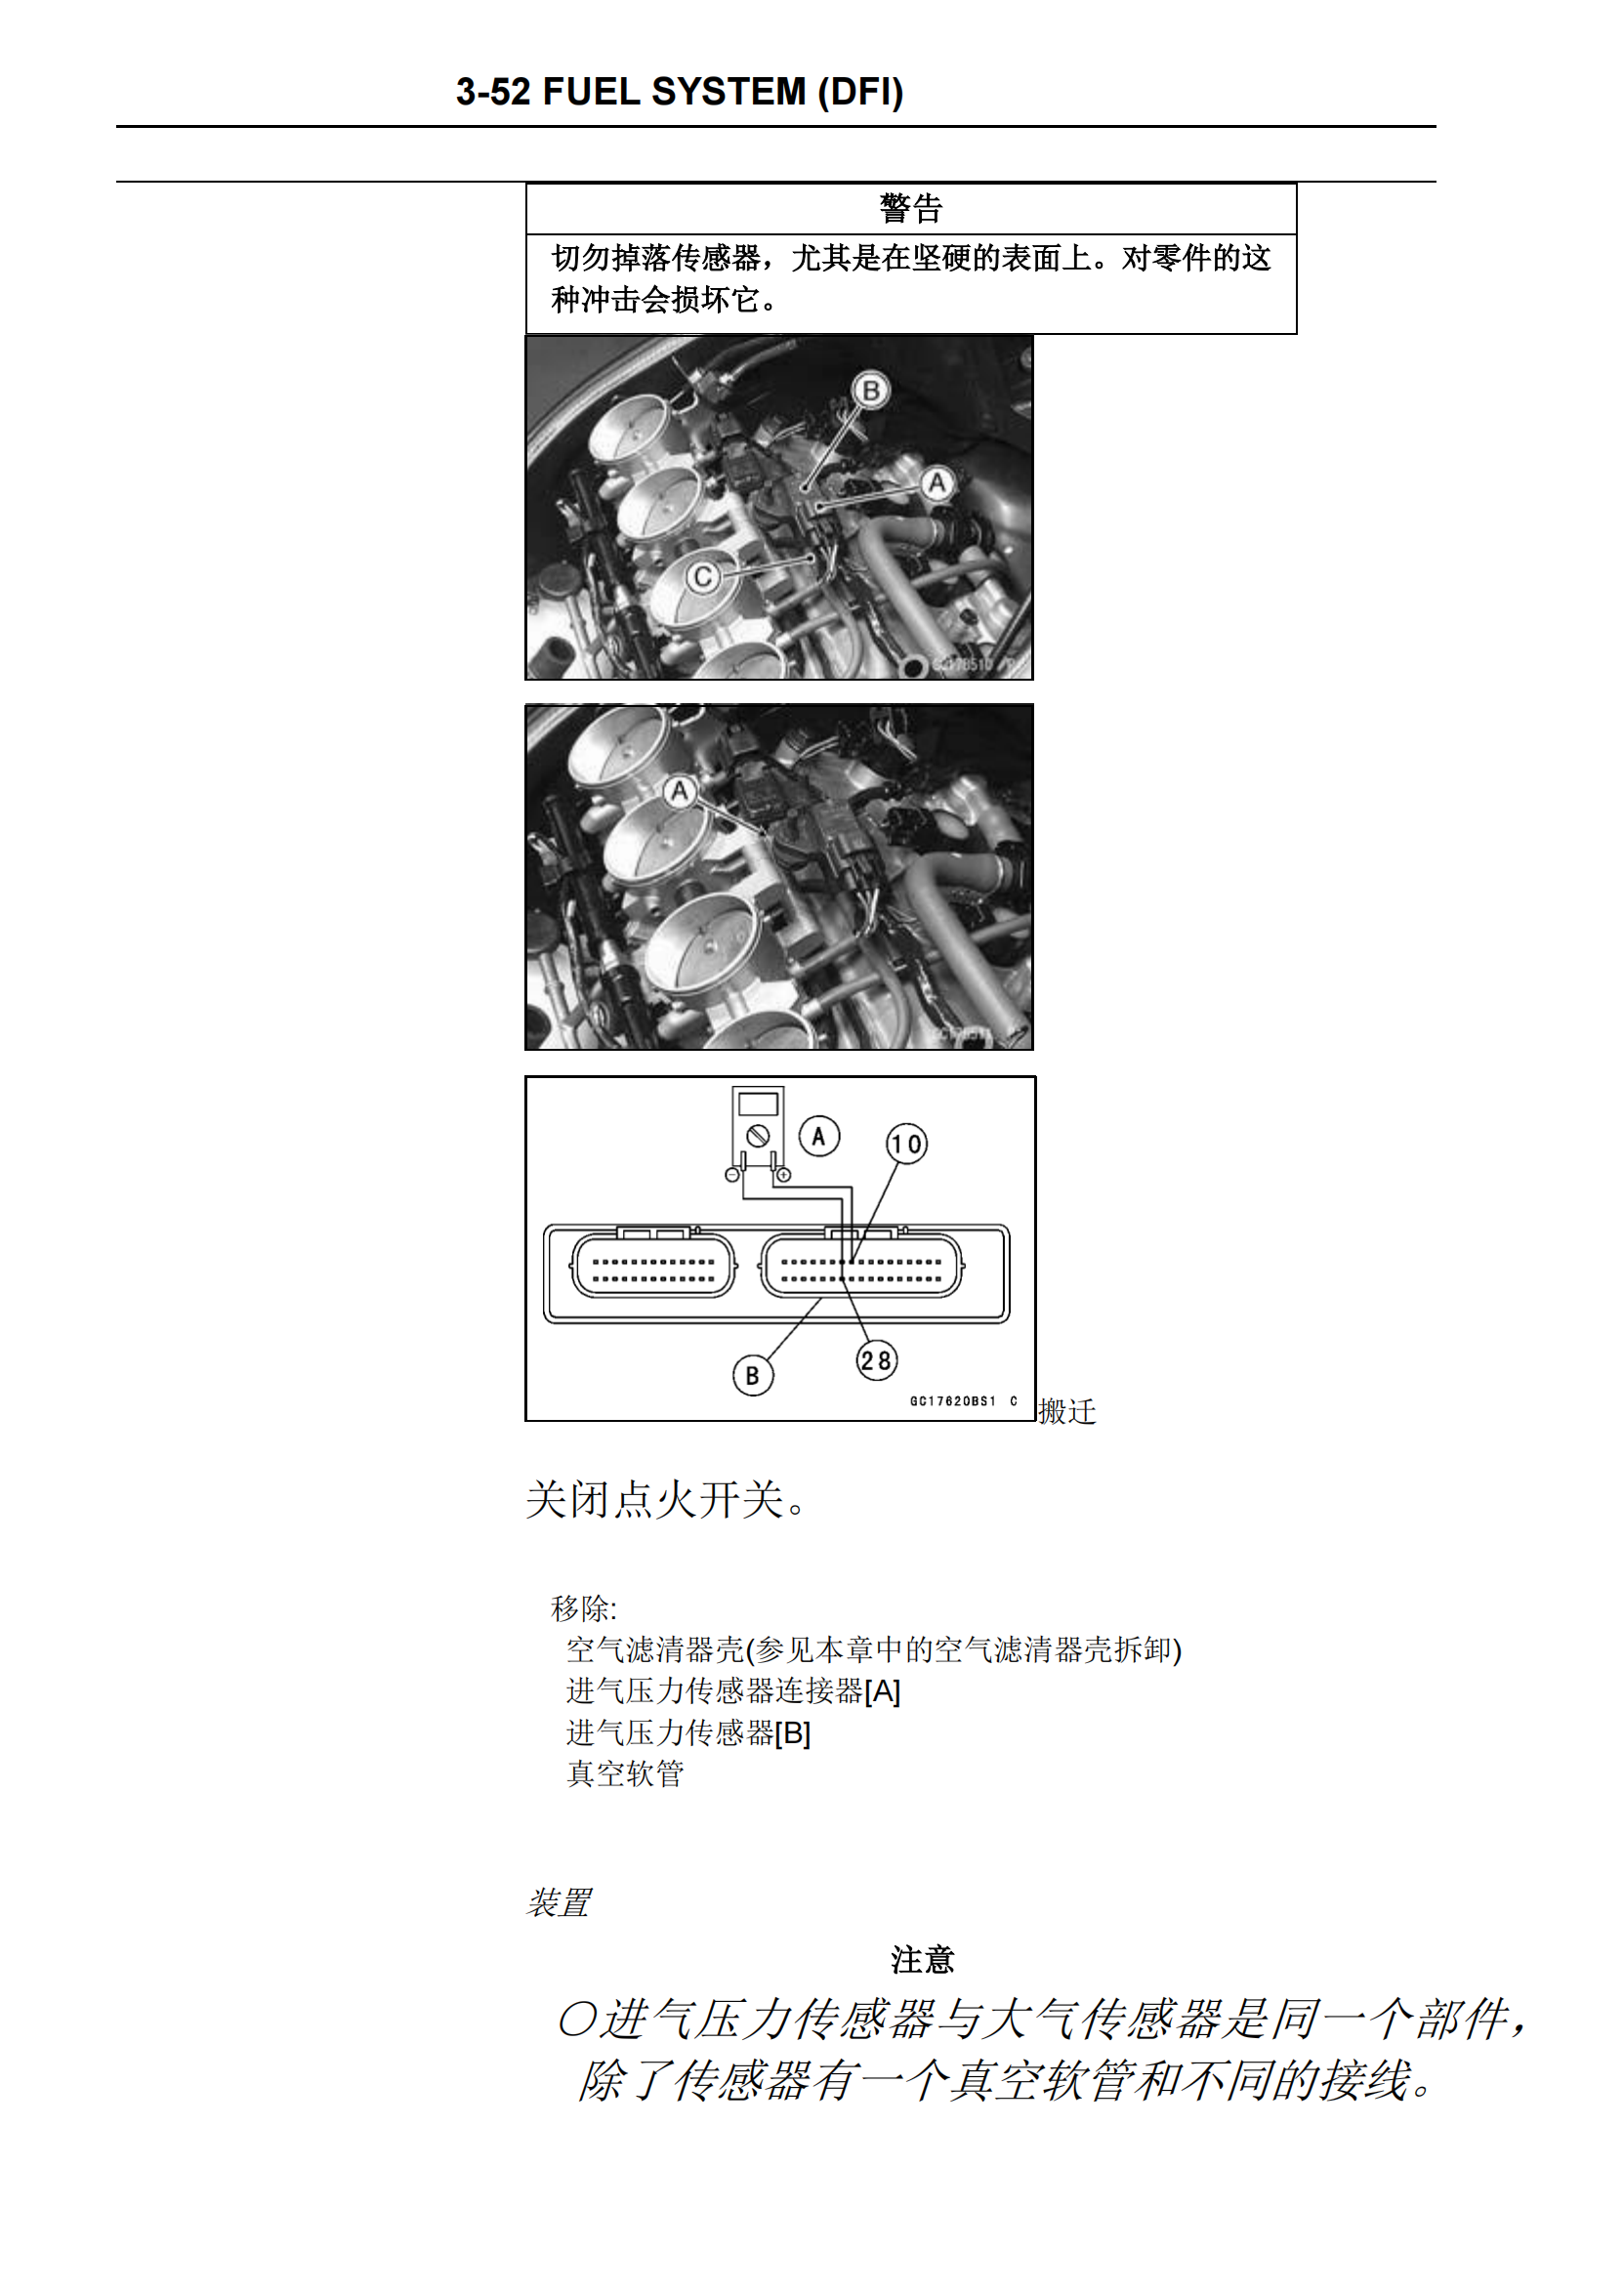 简体中文2005-2006年川崎ninja zx6r kawasaki ninja zx6r 维修手册插图3